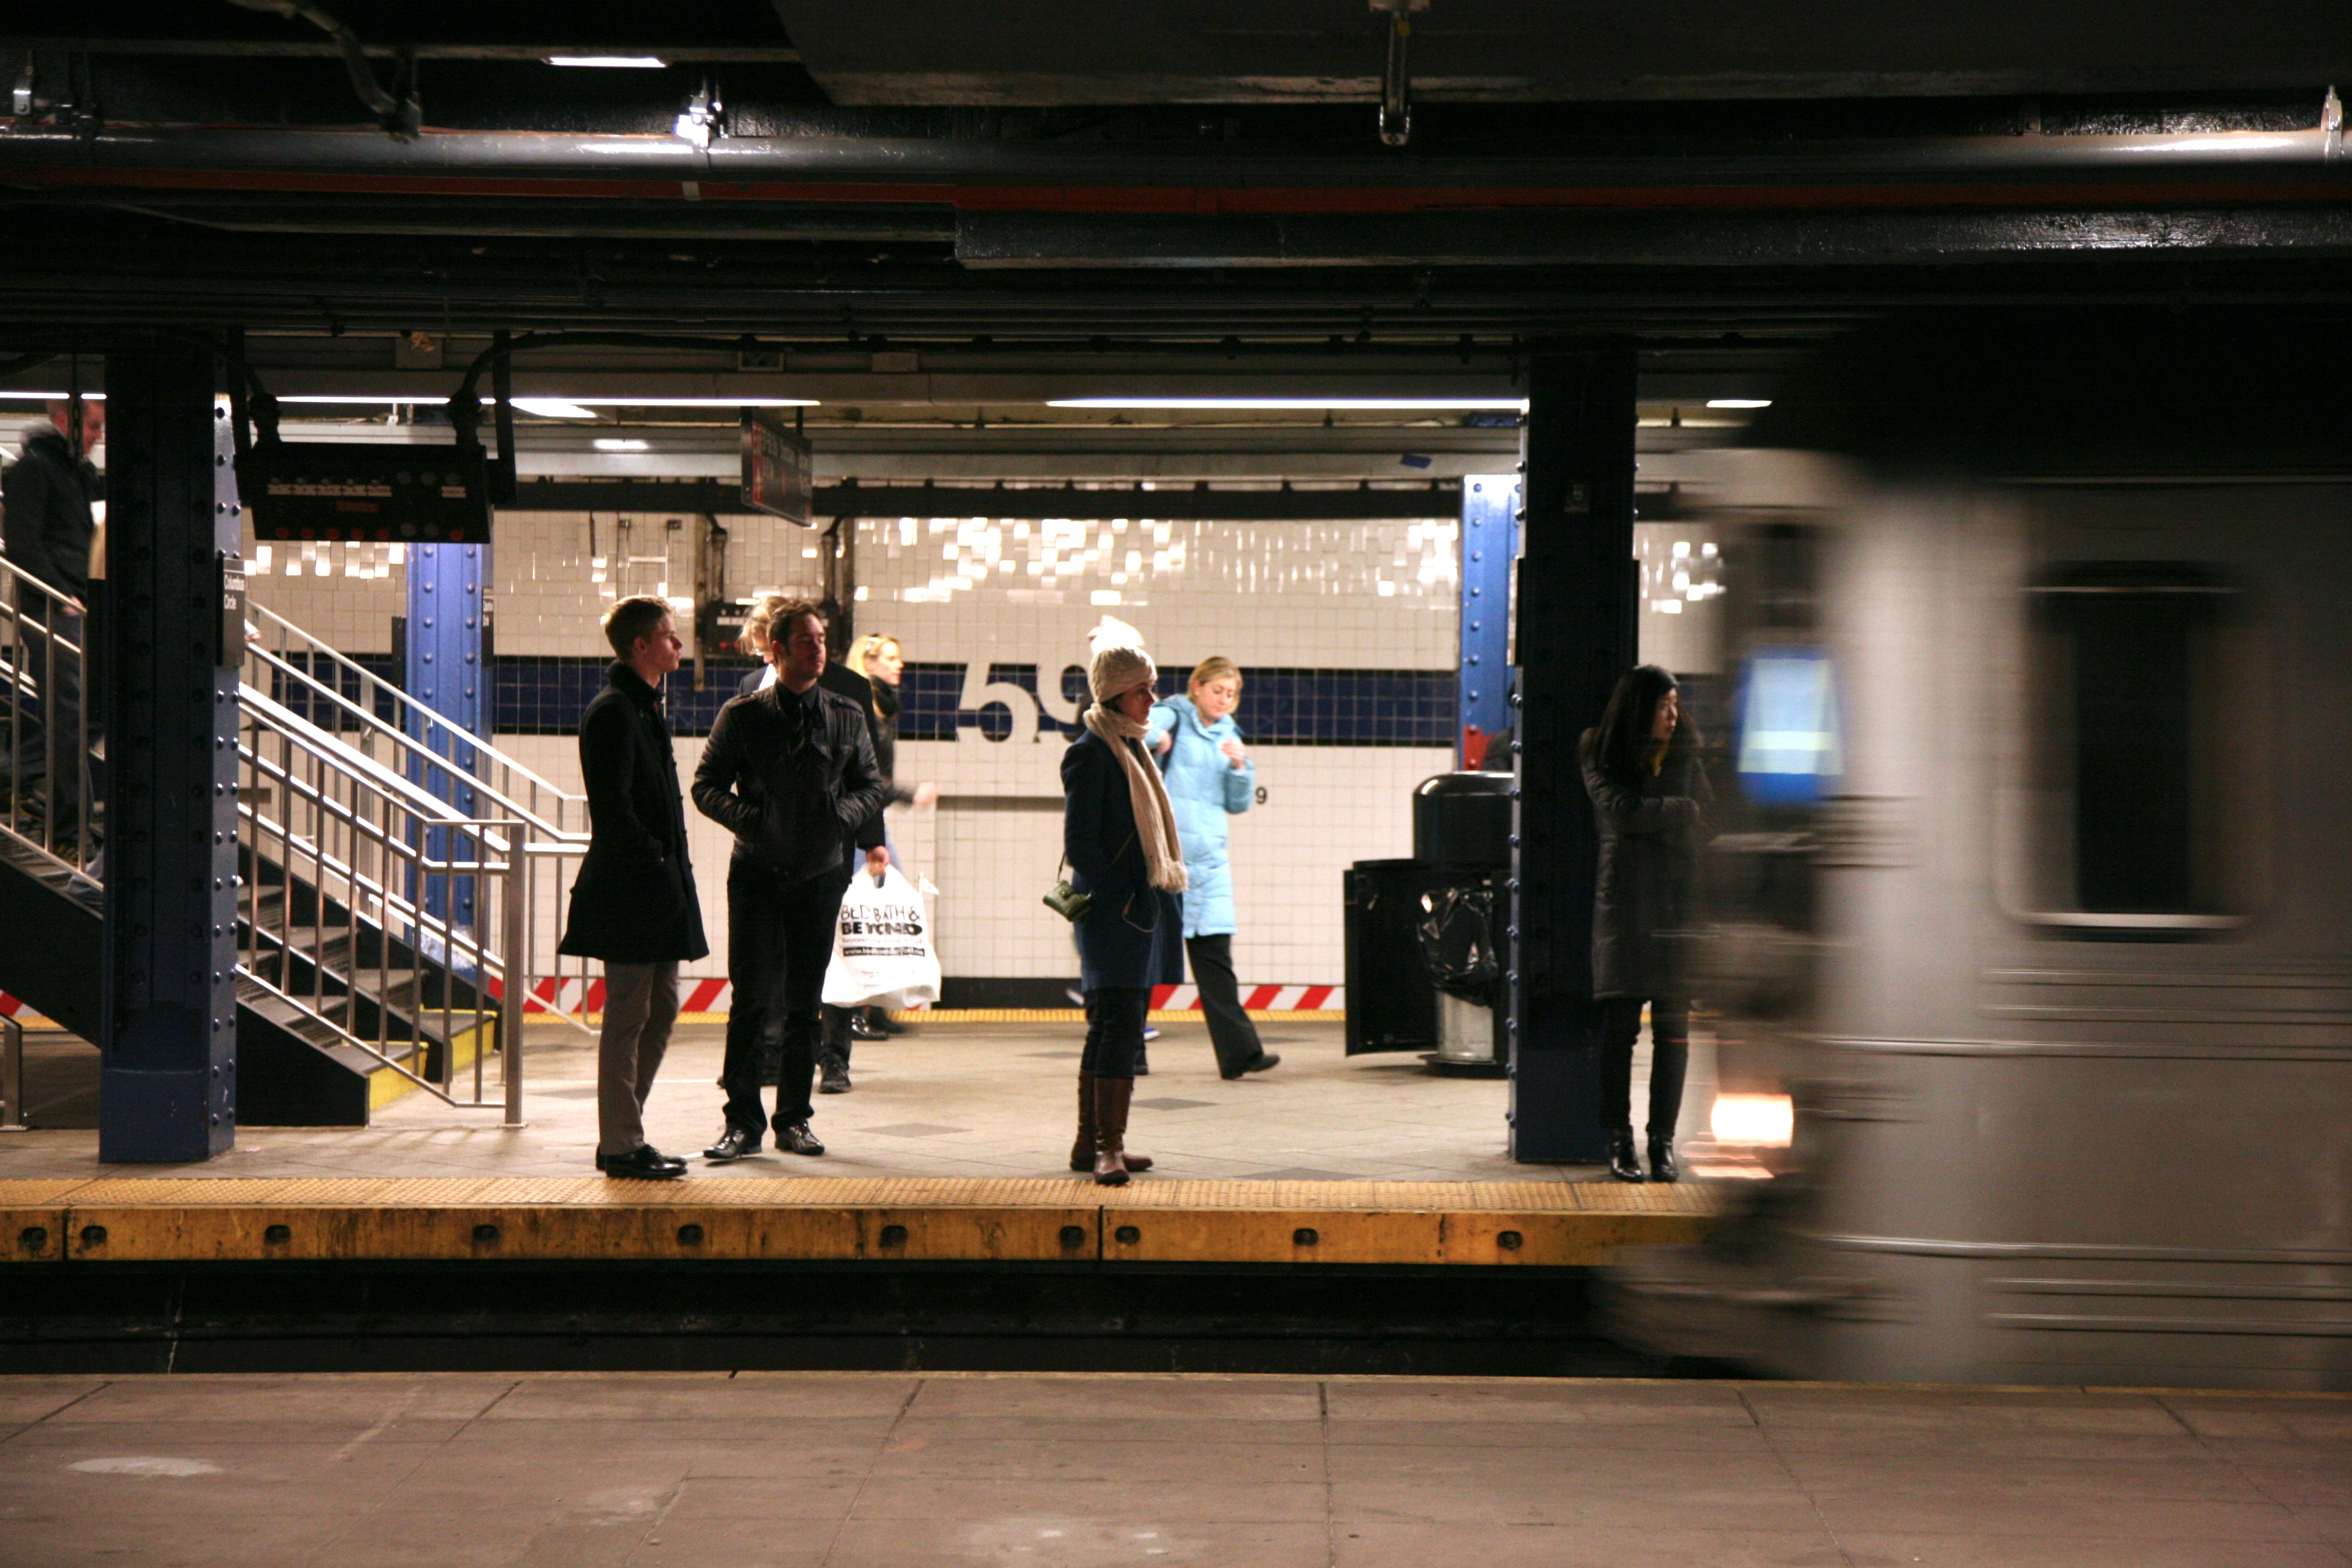 Скинь станцию. Метро Нью-Йорка 2023. 59-Я улица - Колумбус-Серкл (Нью-Йоркское метро). Метро в Нью-Йорке фото 2023 года. Грязное метро Нью-Йорка.